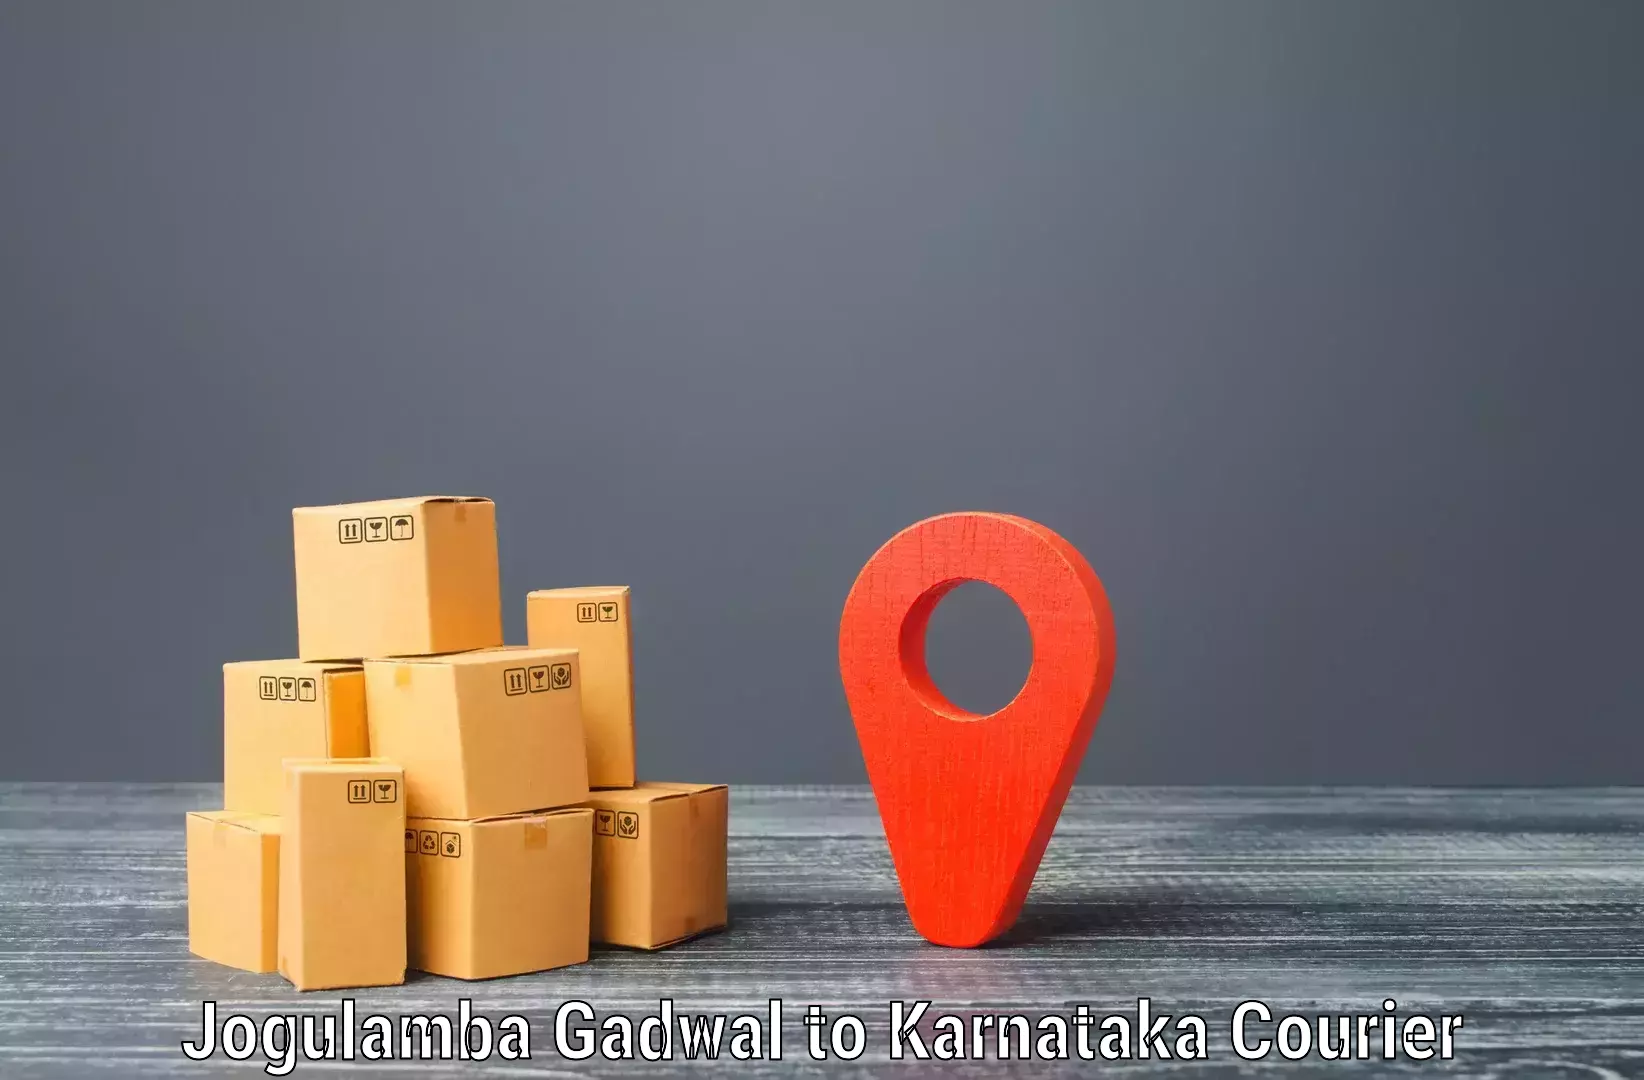 Efficient shipping platforms Jogulamba Gadwal to Sringeri